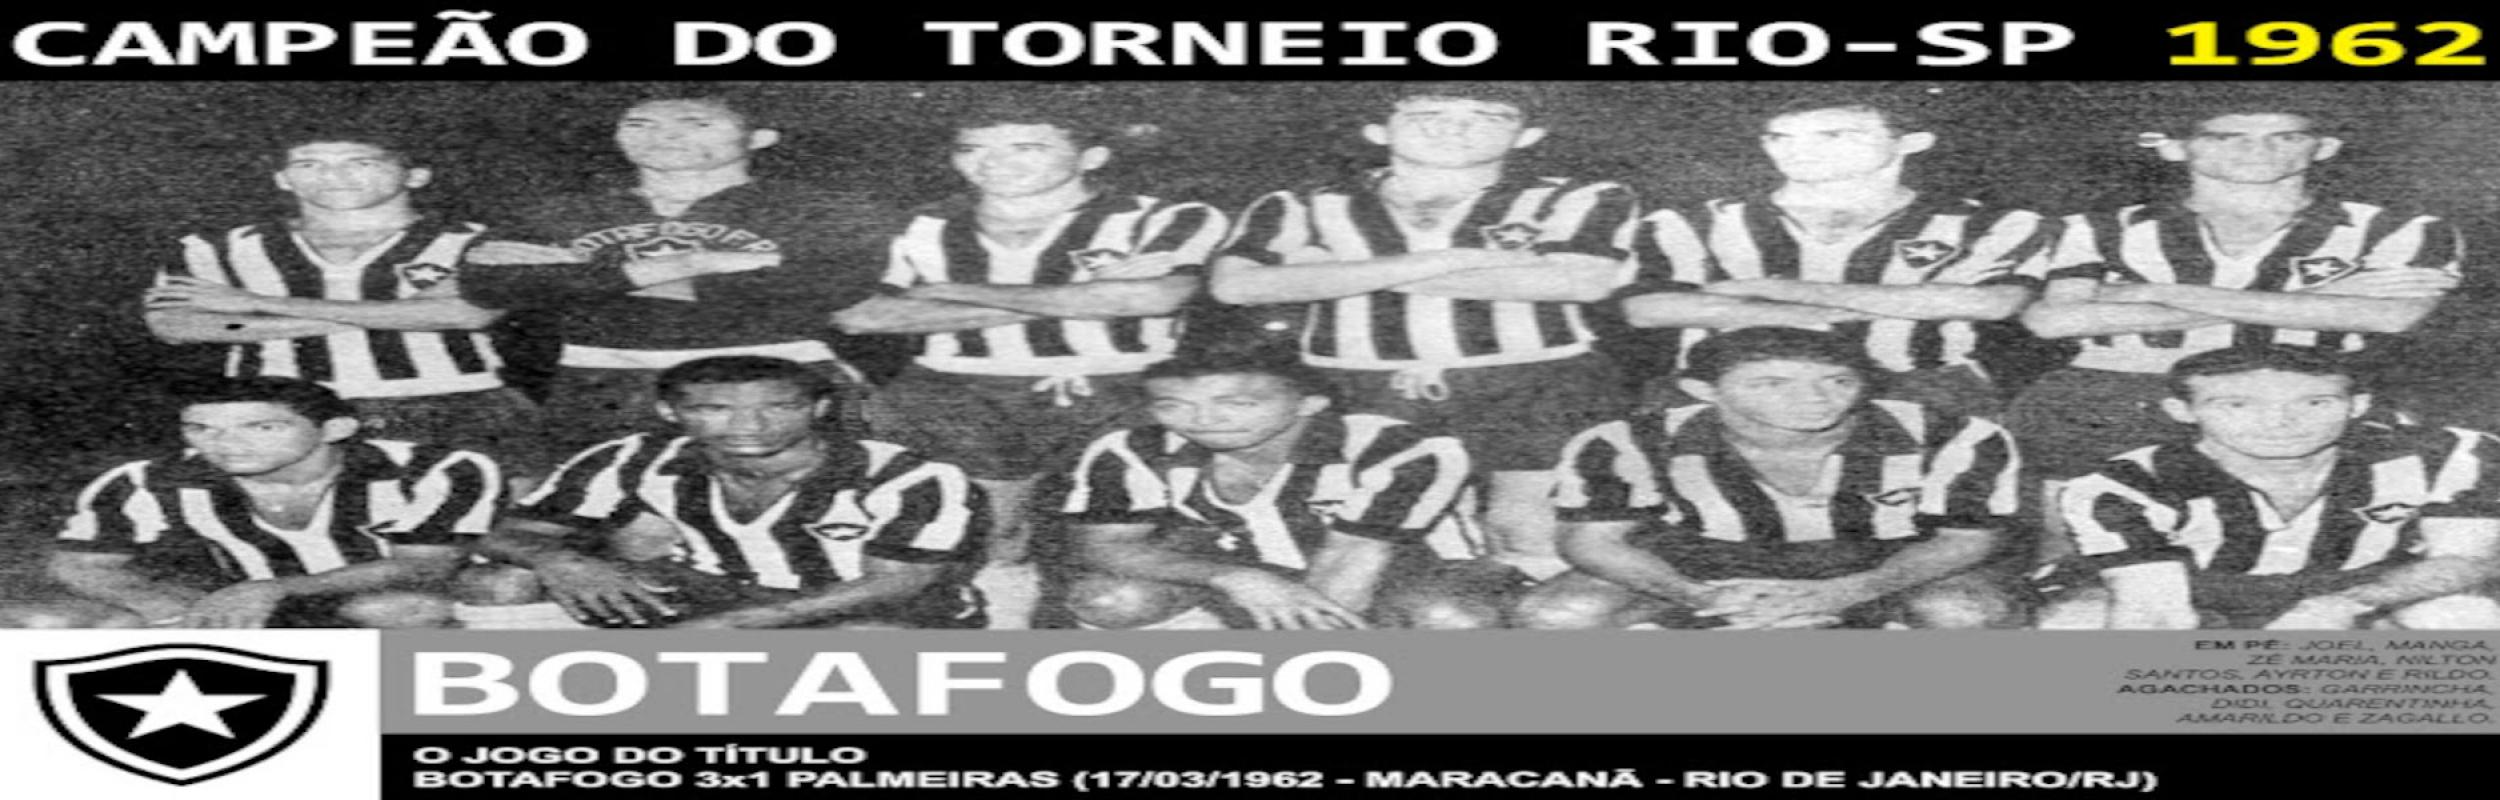 Torneio Rio-São Paulo 1962